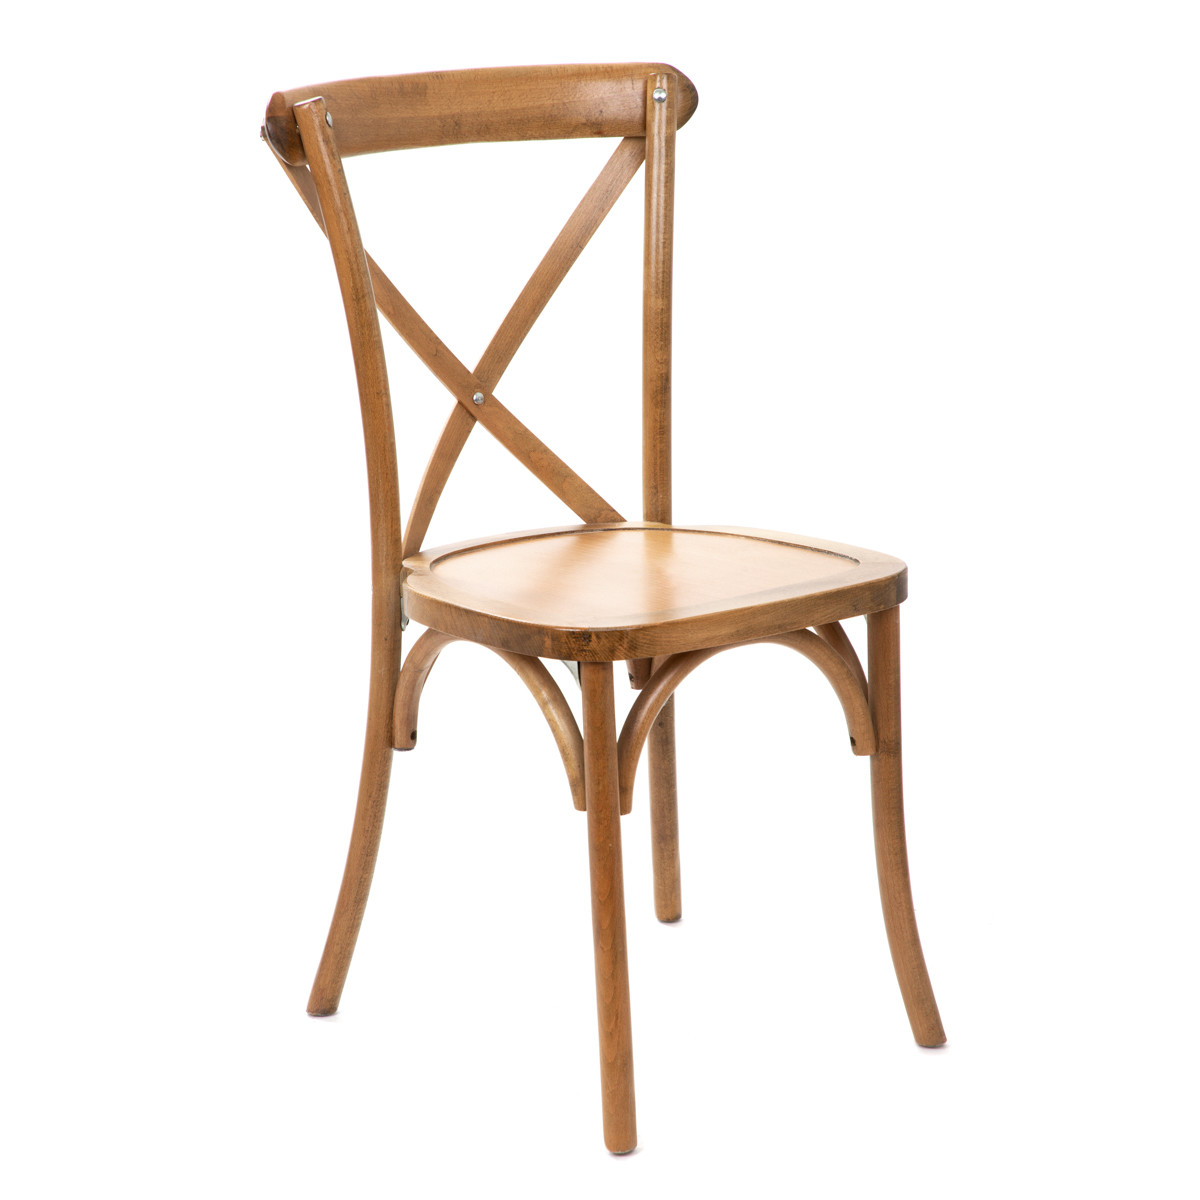 Jídelní židle DŘEV dřevěná 871325